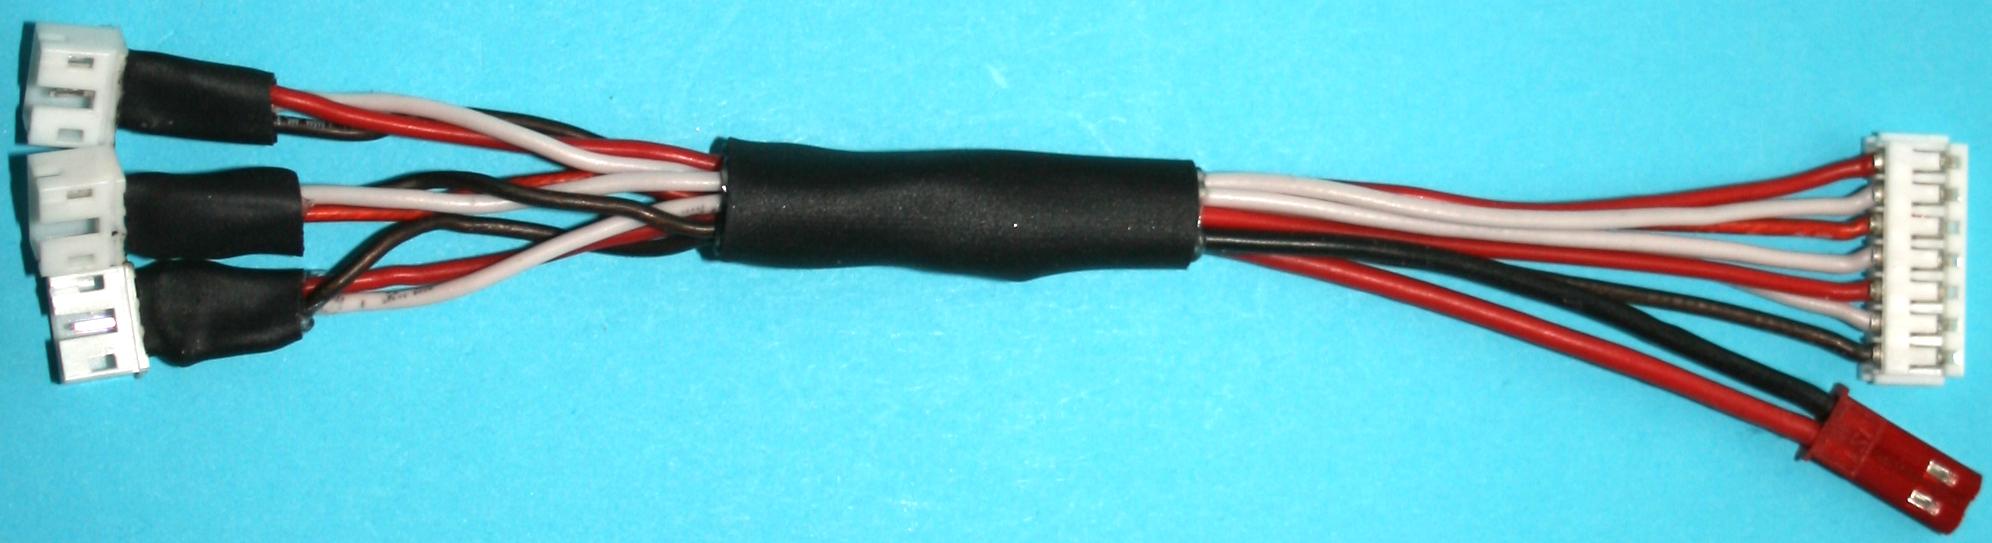 PVC-Litze, 2 x 0,35 mm² - Muldental Elektronik GmbH